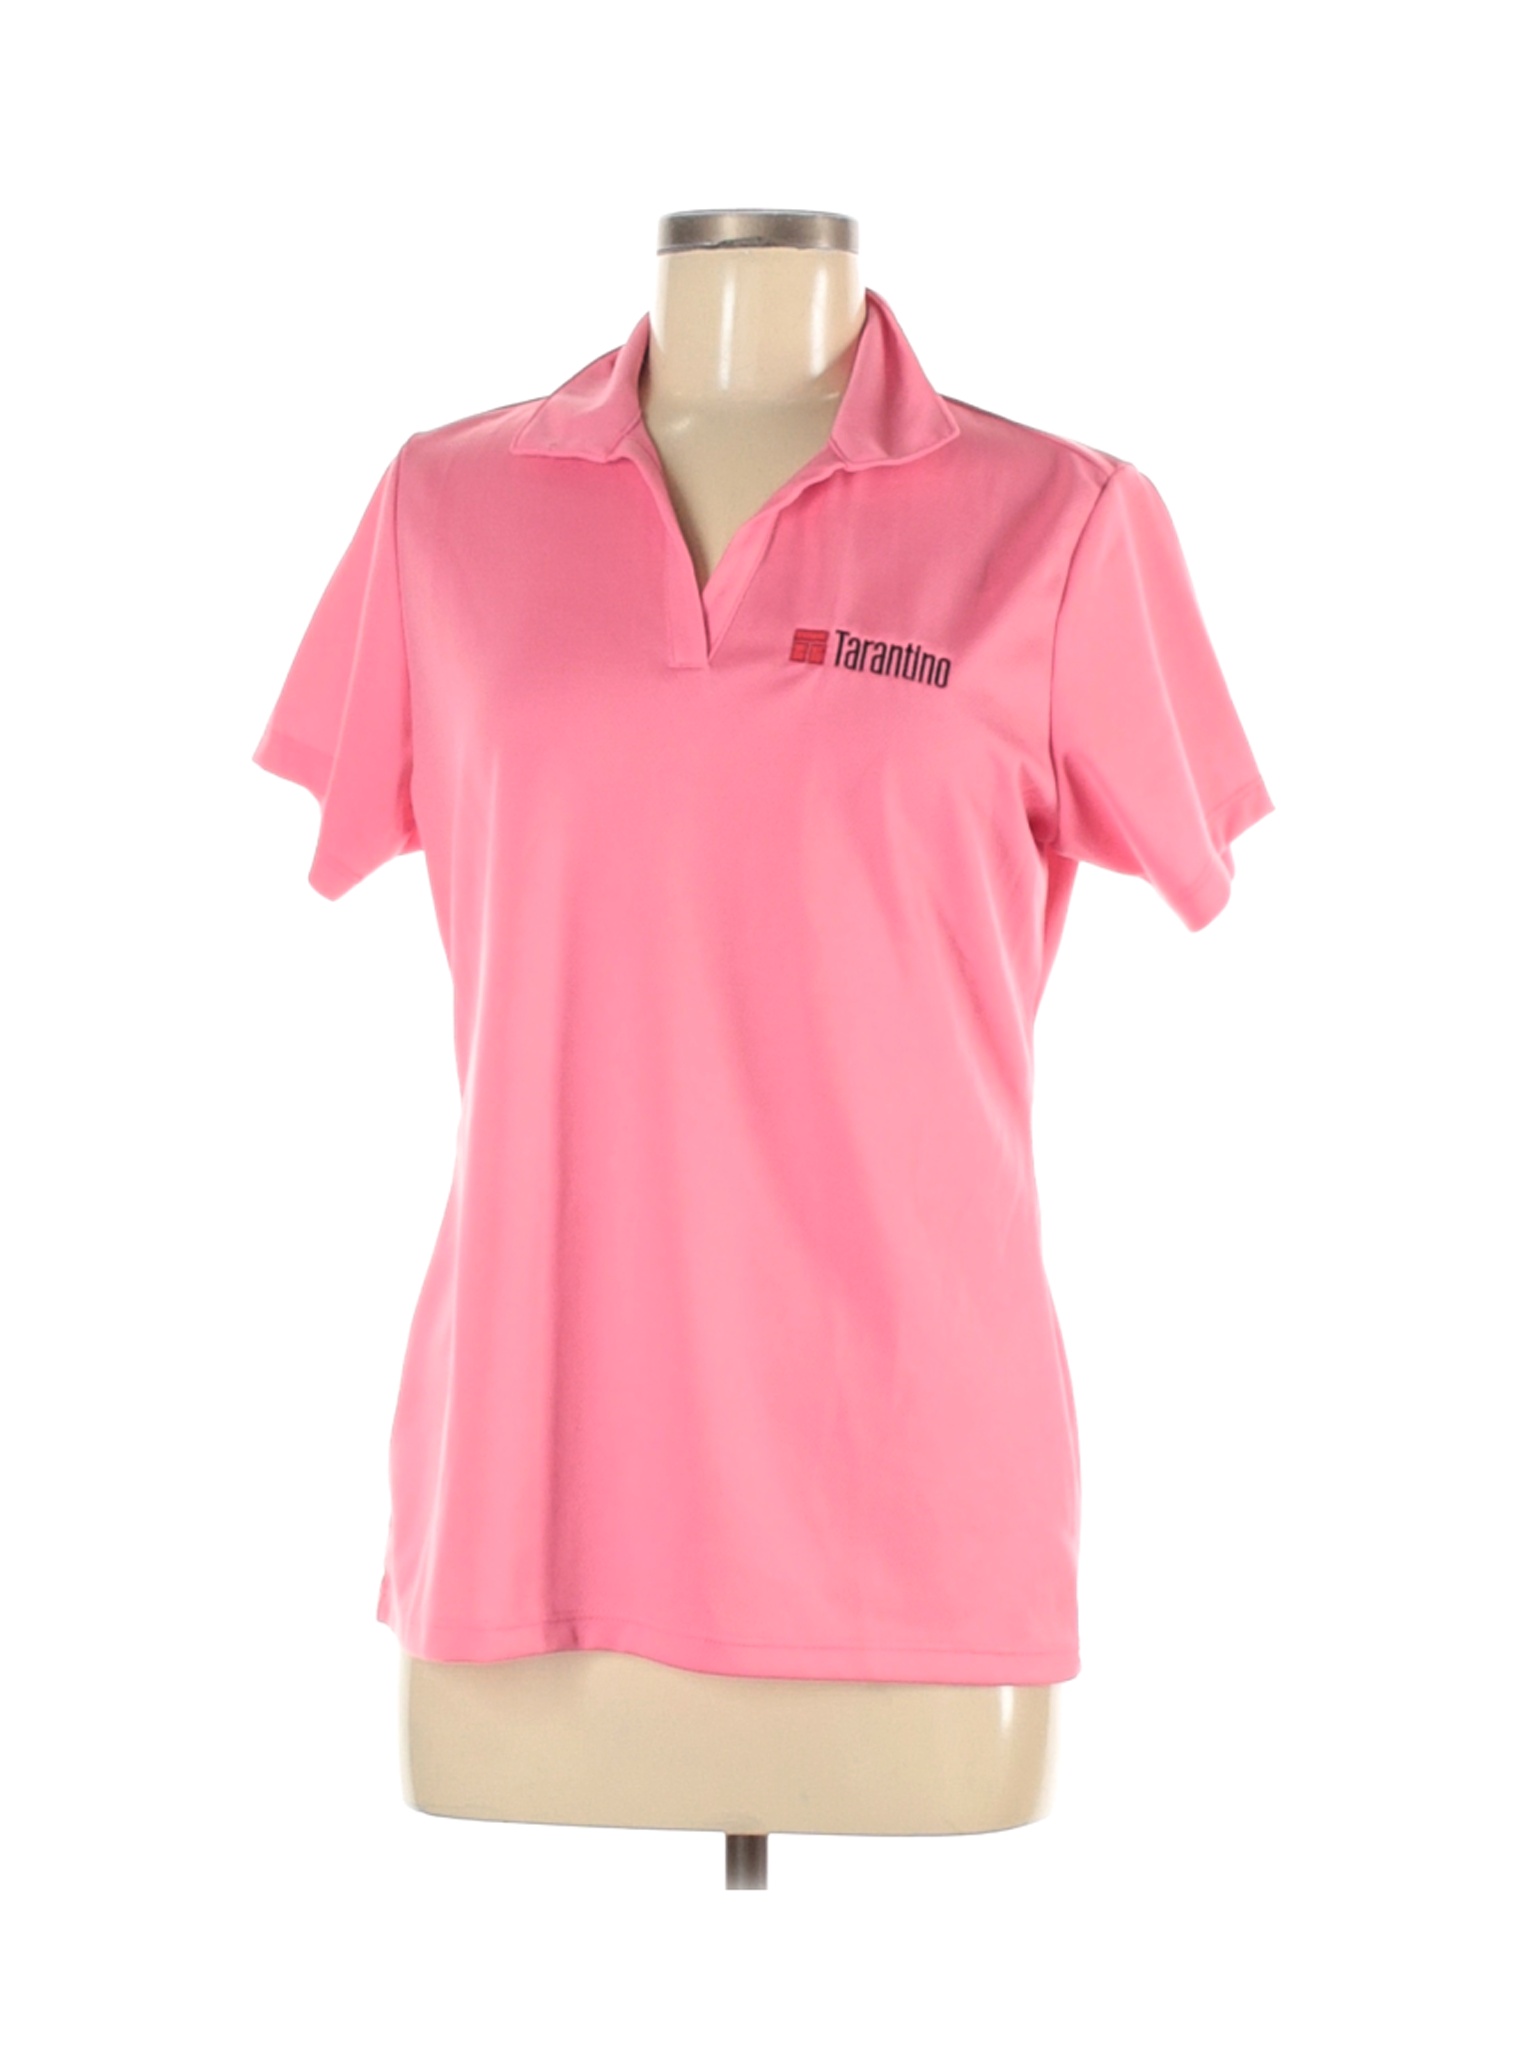 Sport-Tek Women Pink Active T-Shirt M | eBay